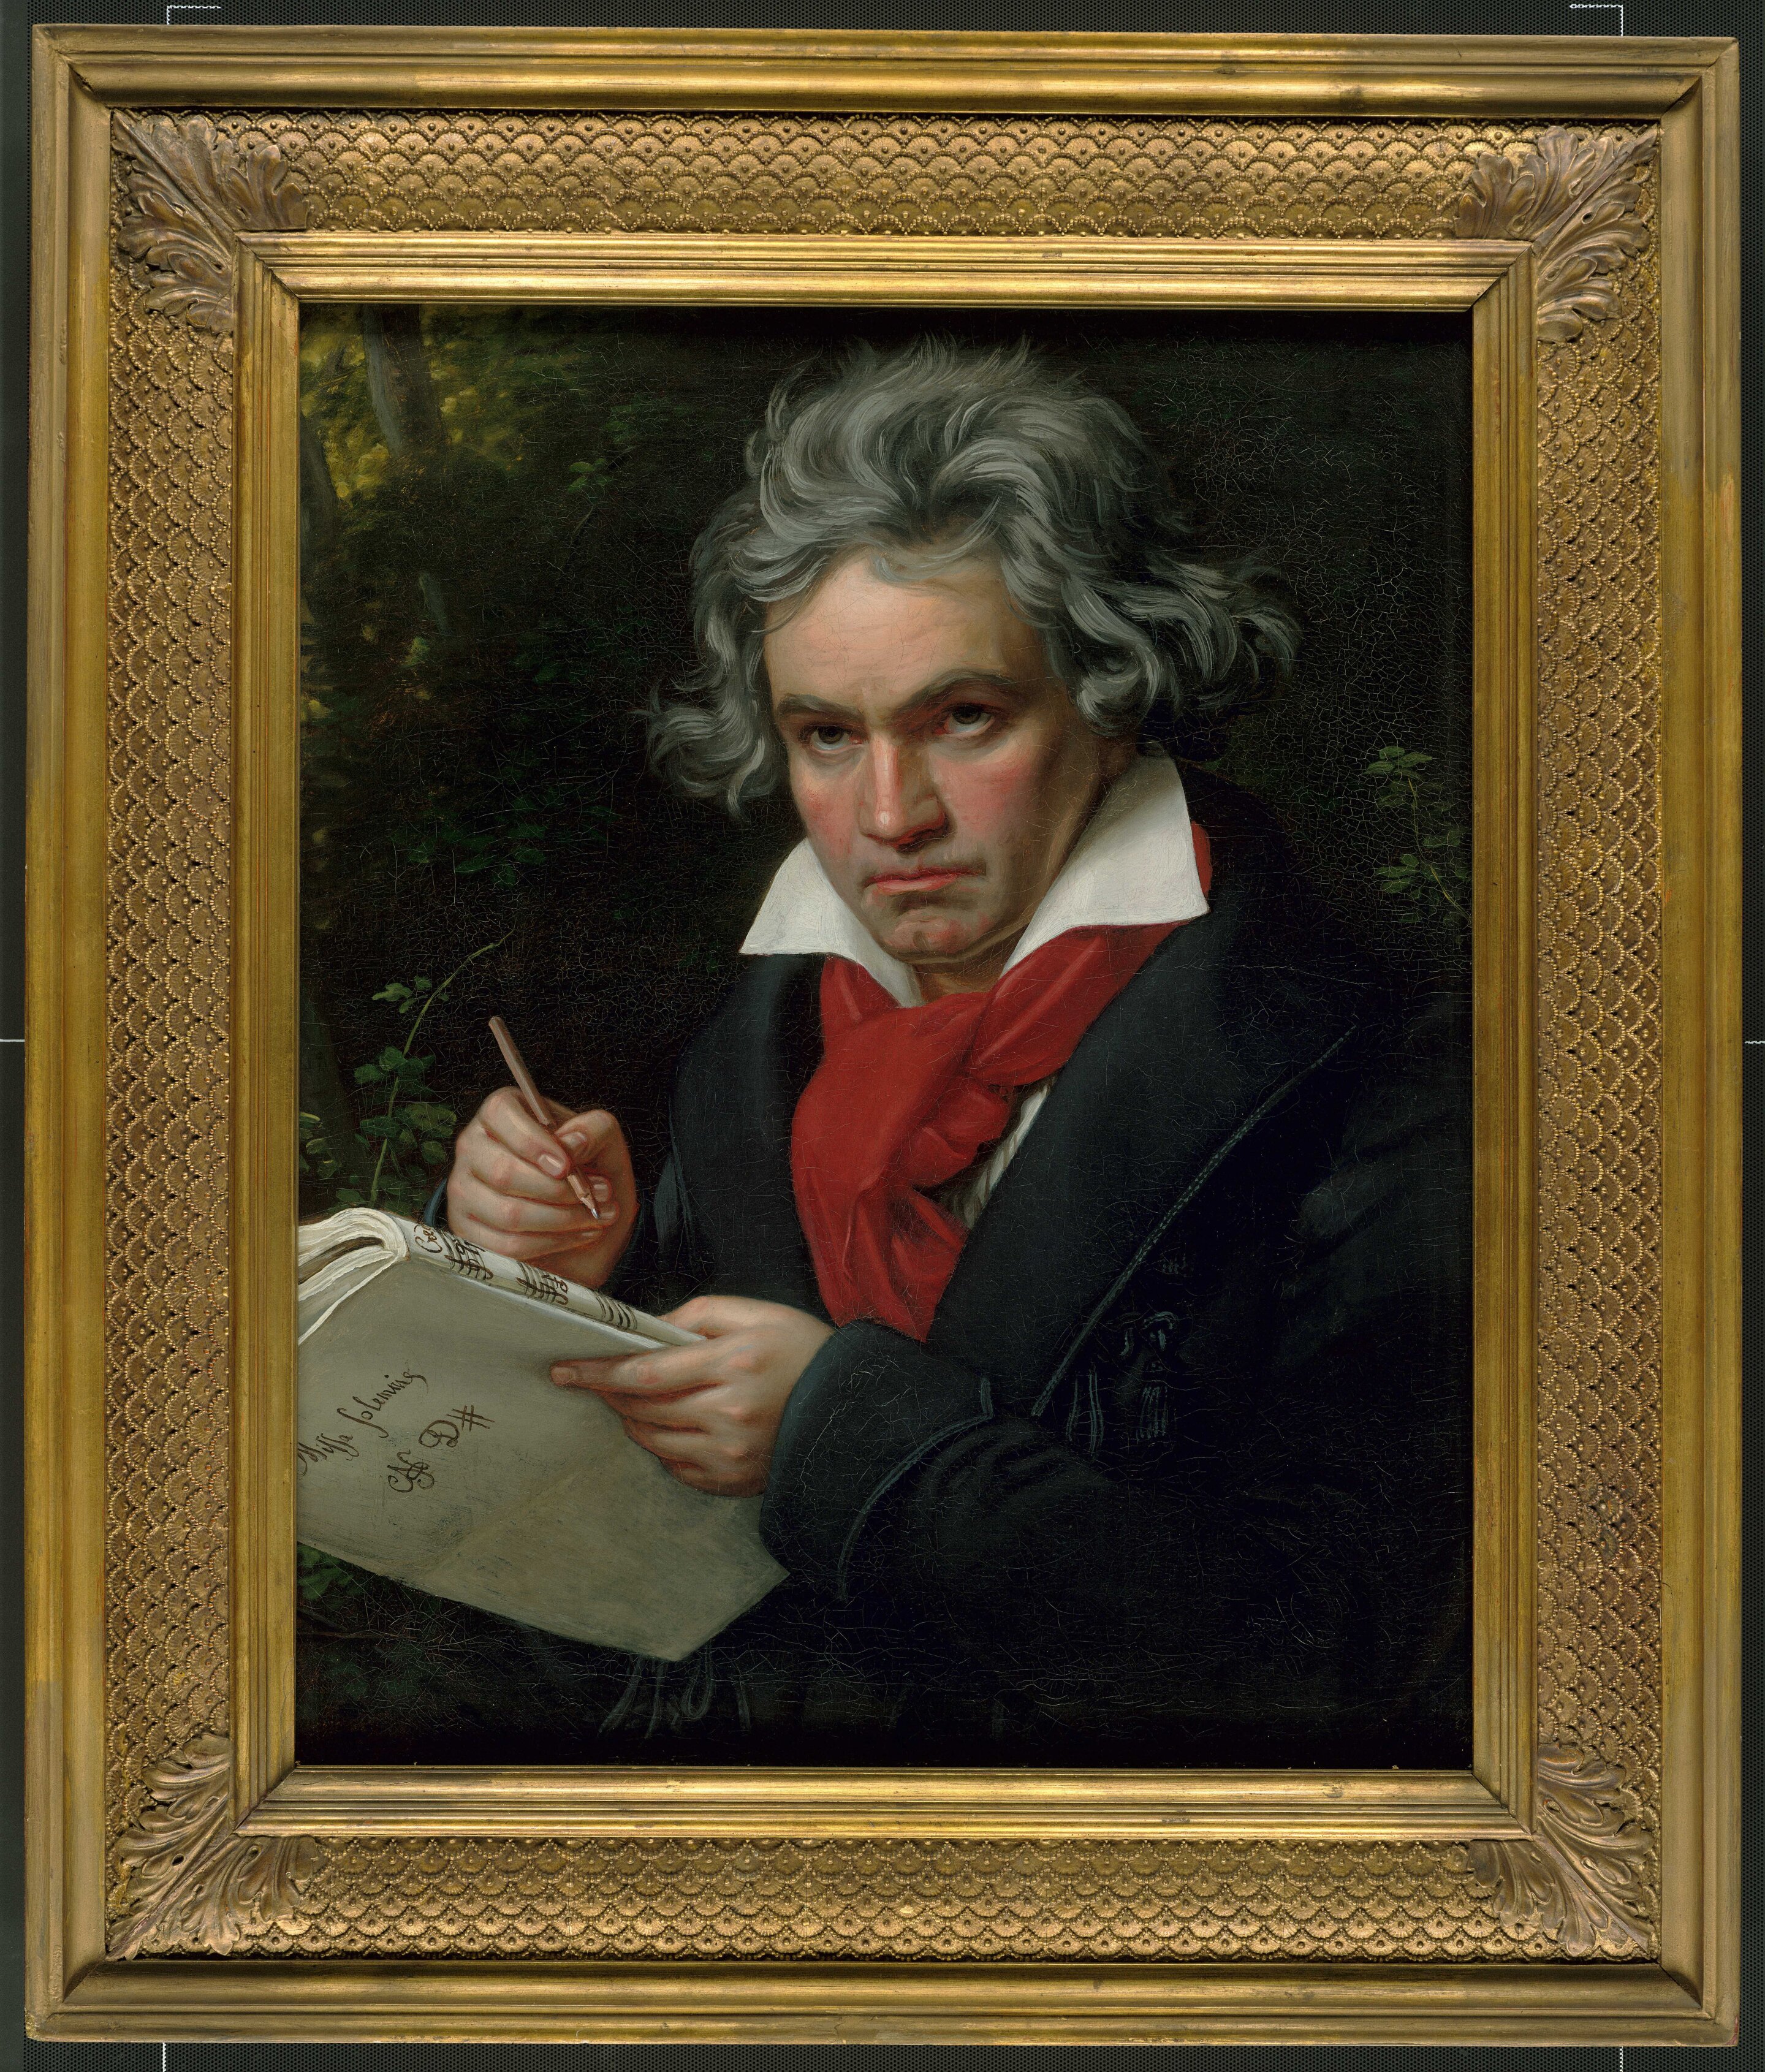 Ludwig van Beethoven - Symphonies, Deafness & Race